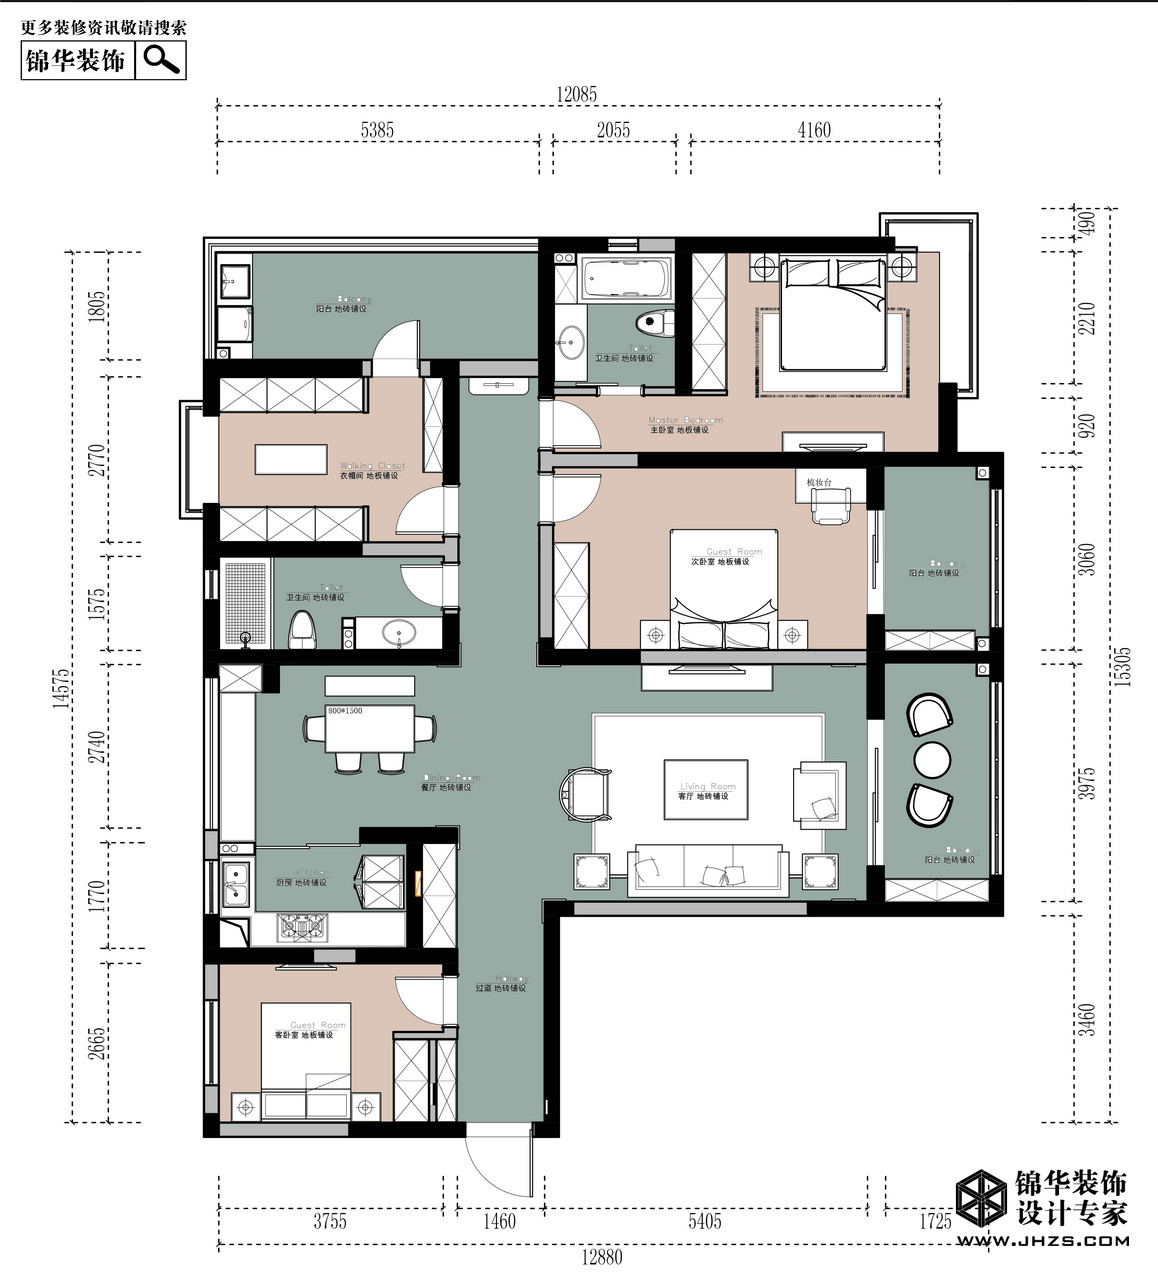 新中式-清河雅苑-四室兩廳-180平米裝修-四室兩廳-新中式